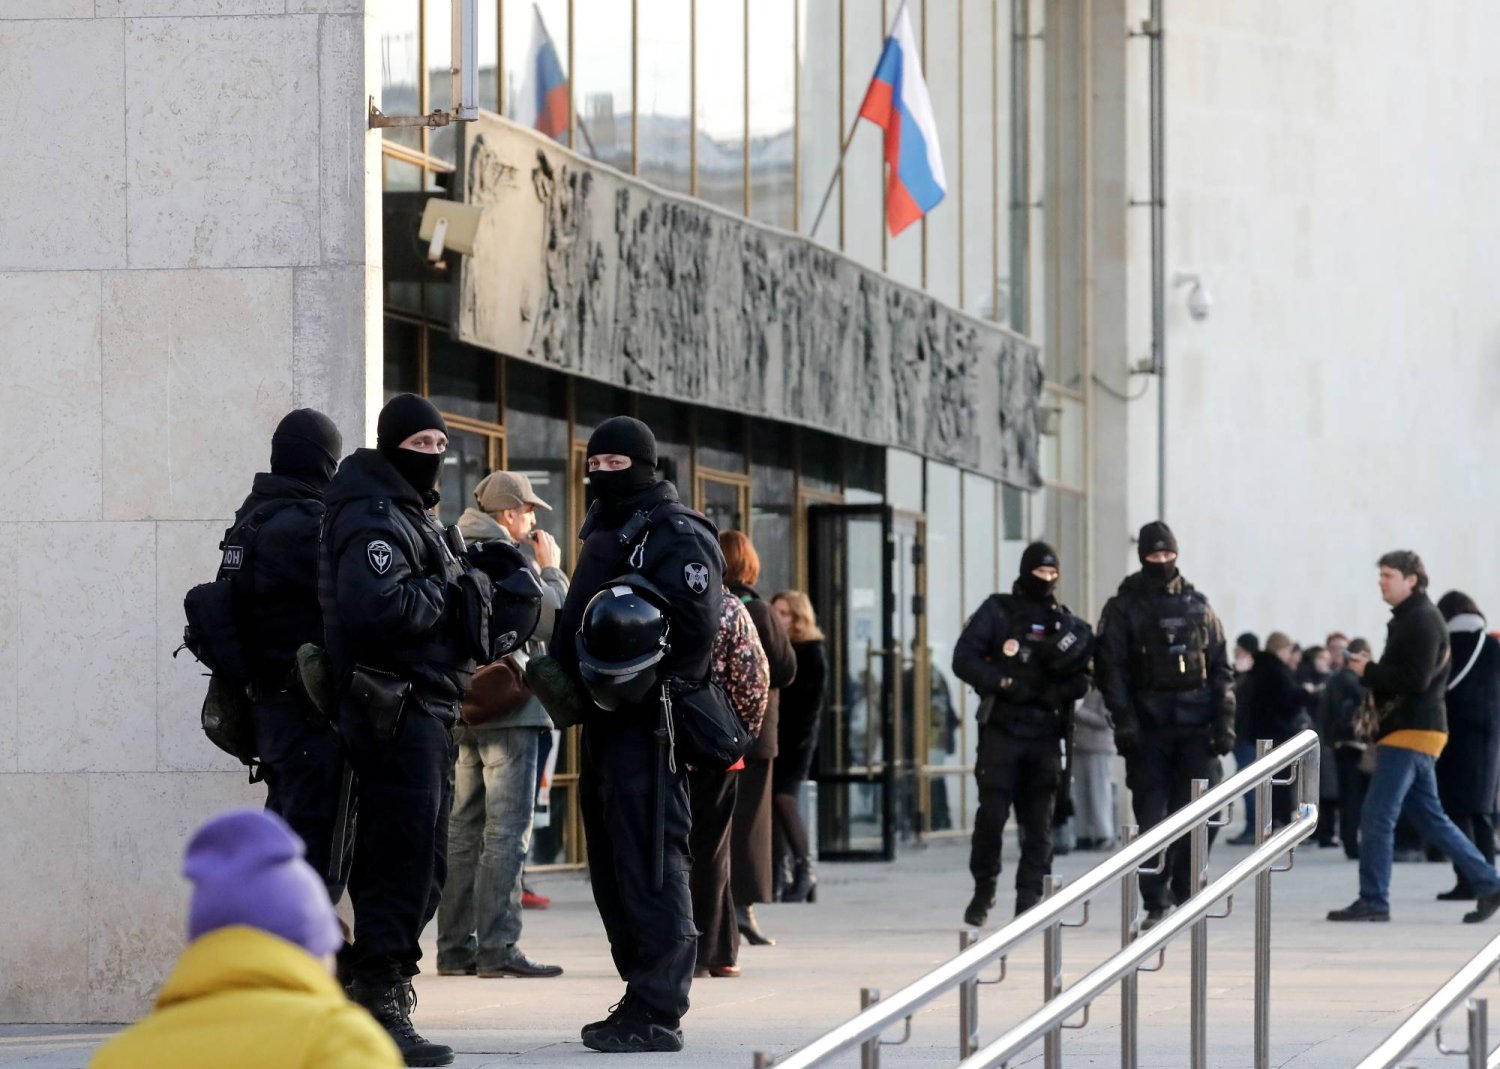 وجود أمني مكثف من الشرطة الروسية خارج قاعة الحفلات في أوكتايابرسكي بعد هجوم كروكوس الذي أودى بحياة العشرات قرب موسكو (إ.ب.أ)